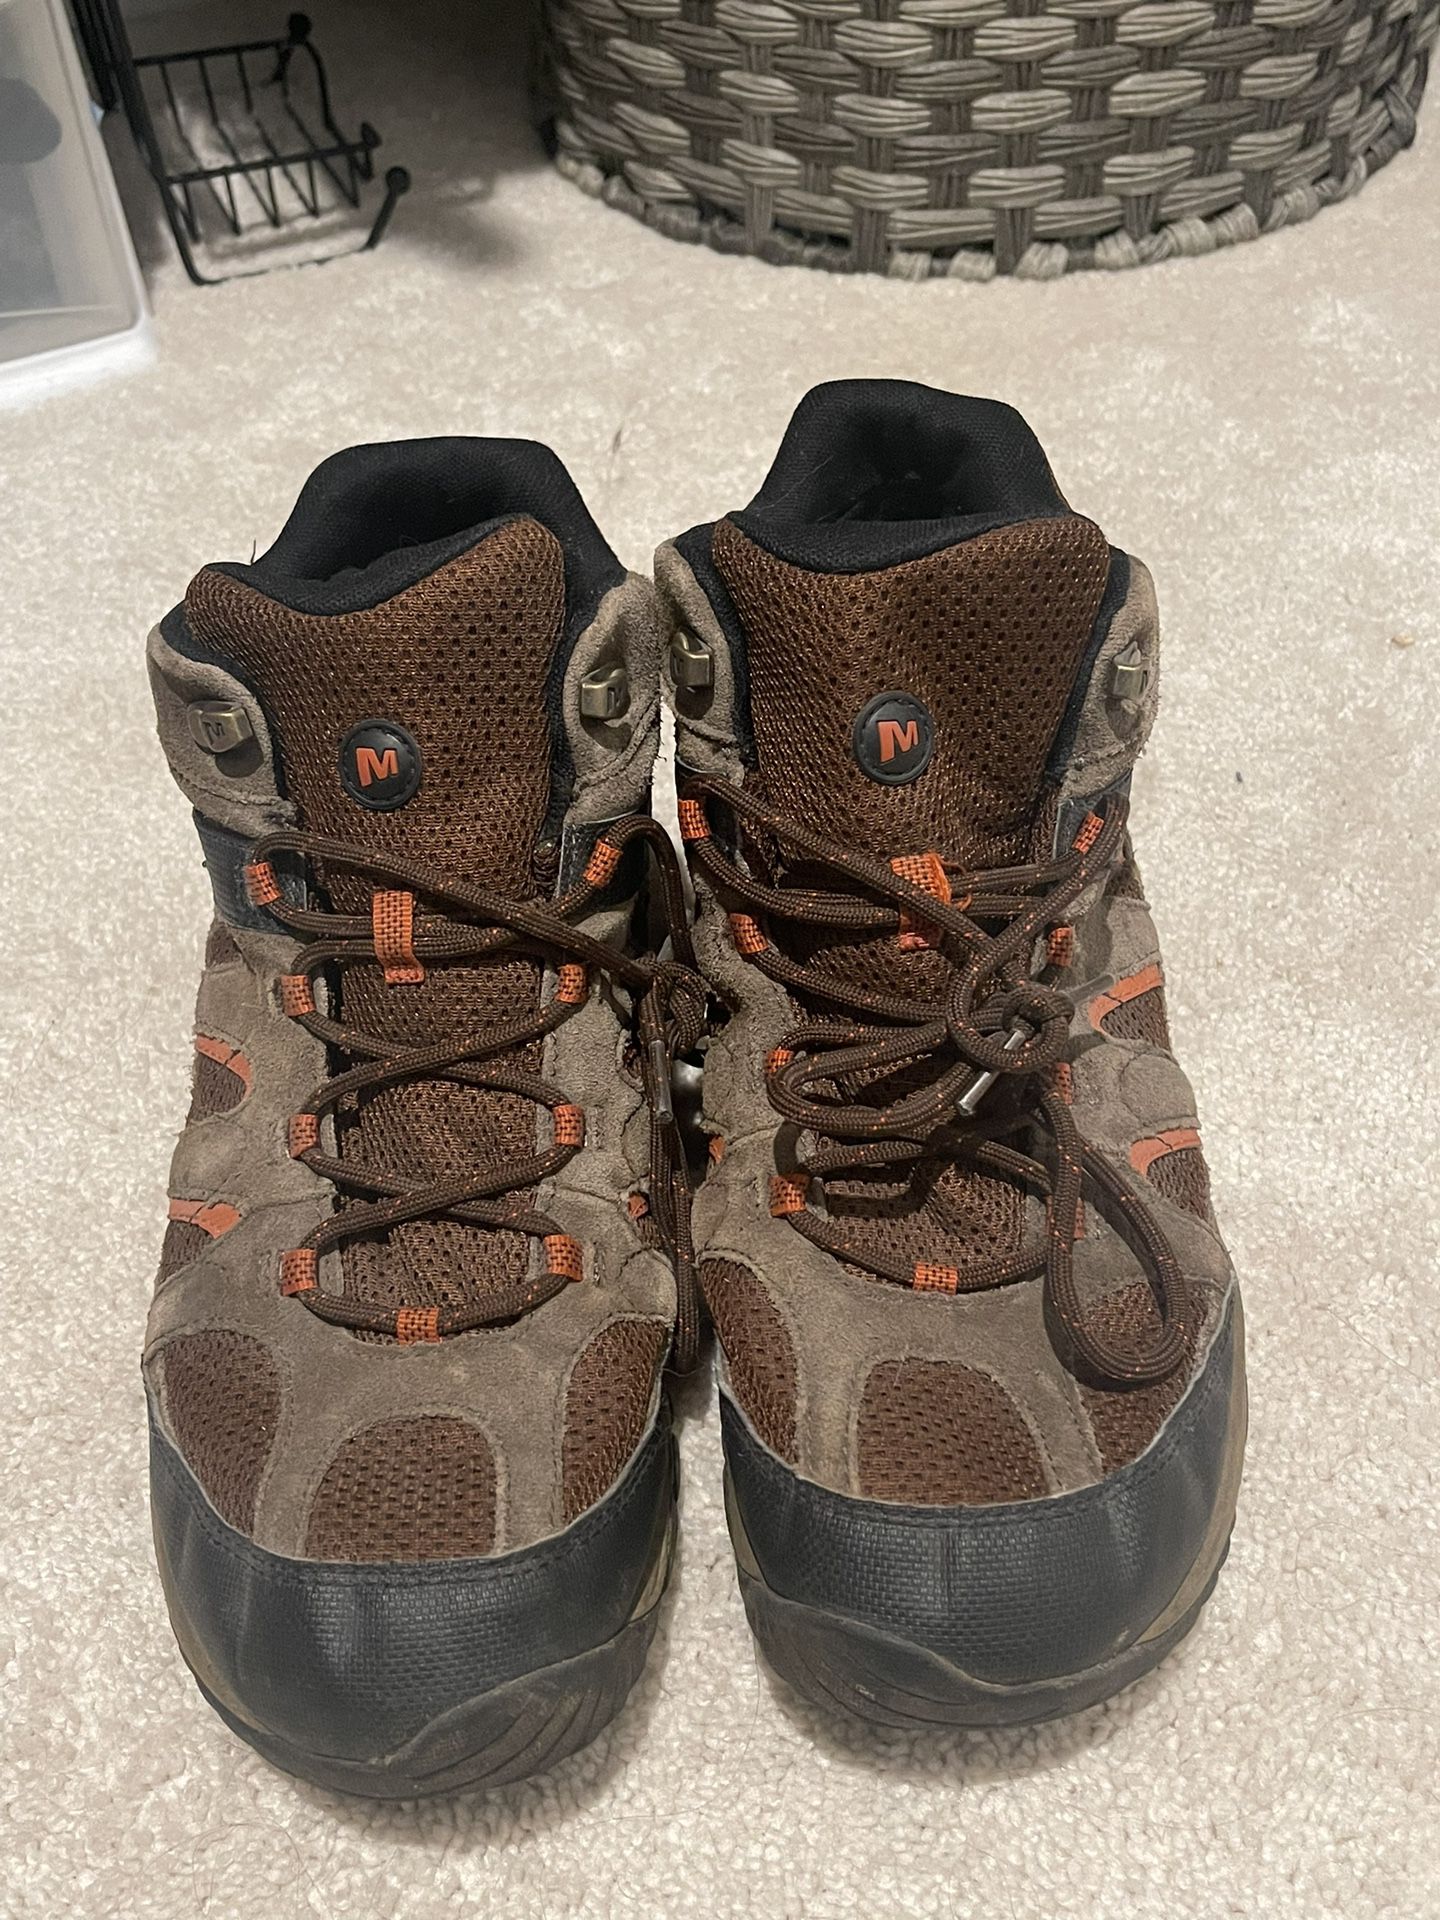 Merrill hiking boots     SZ 11.5 